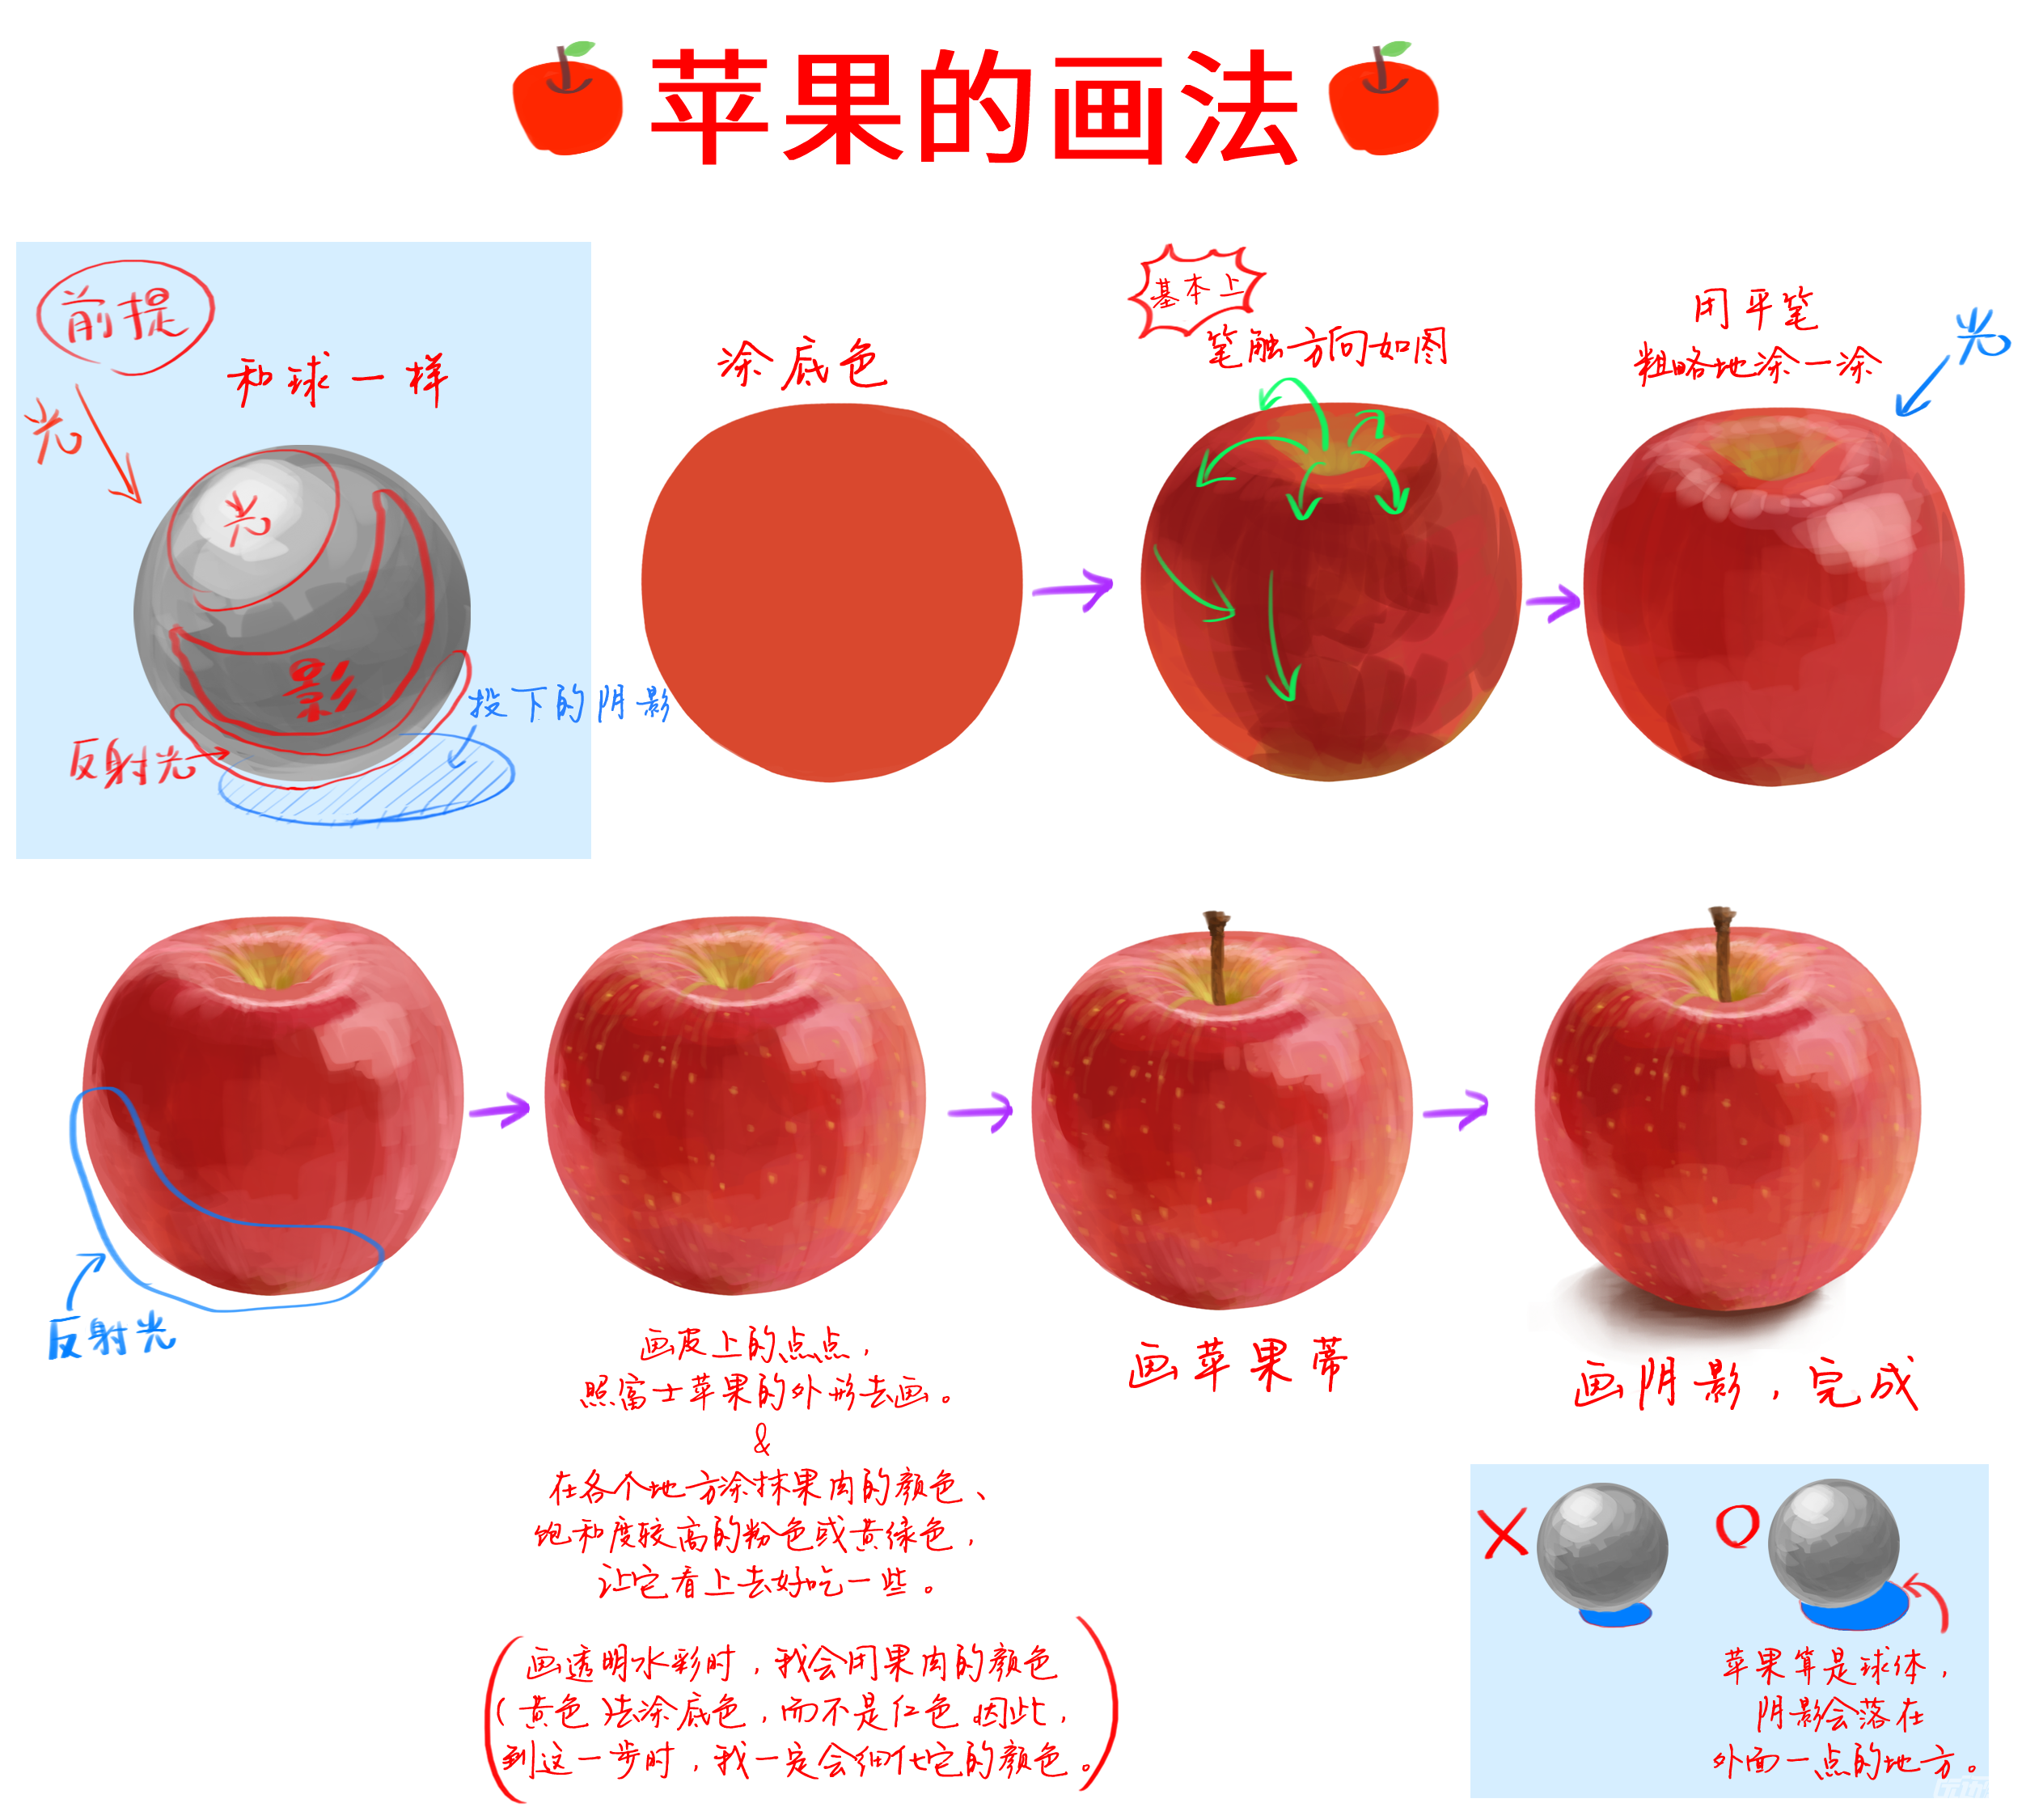 何家英红苹果画法图片